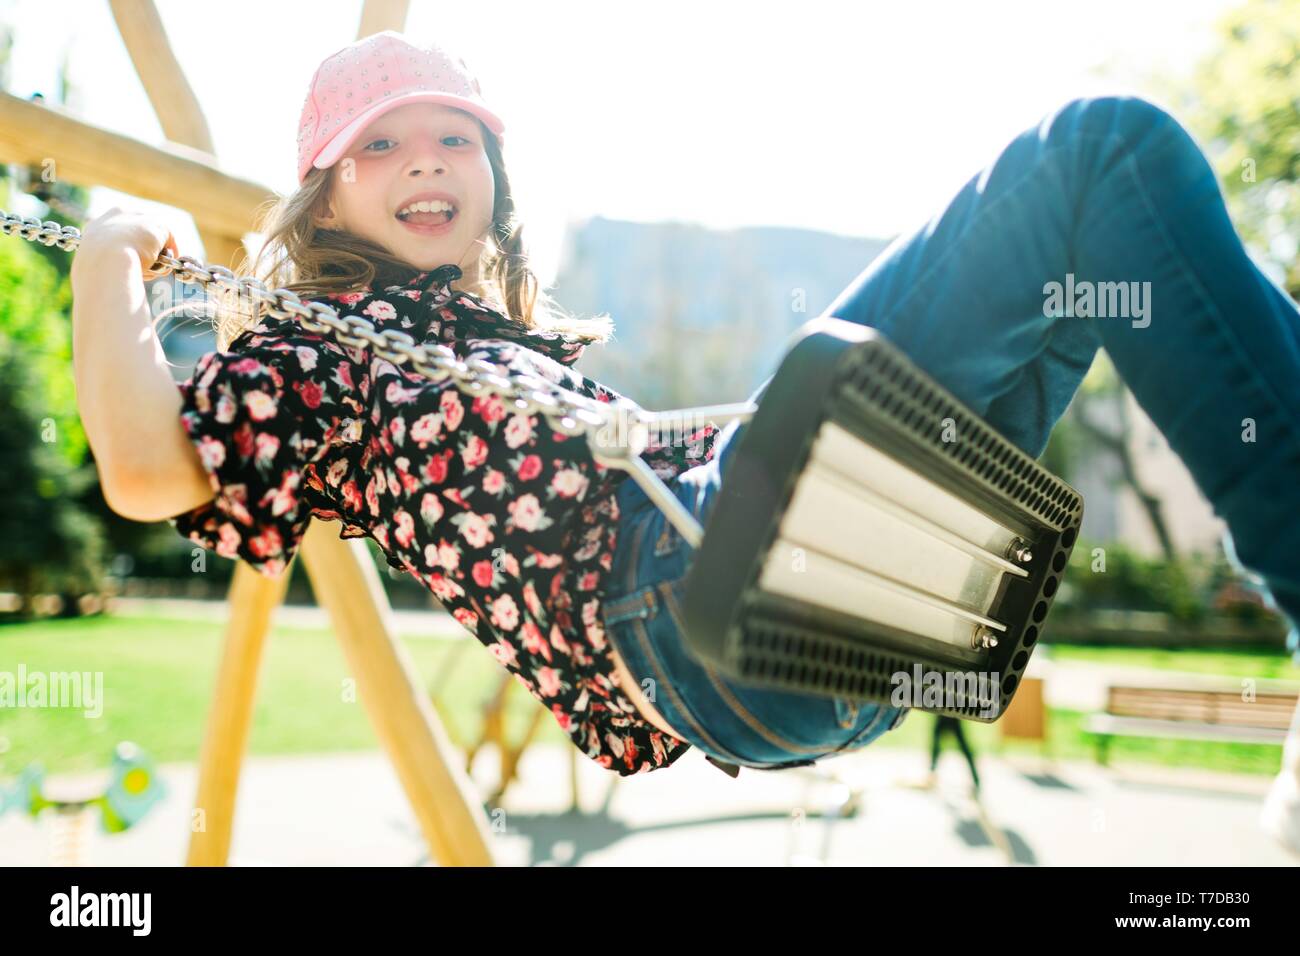 Bambino sorridente nel cappello rosa basculante in parco giochi - giornata di sole e spensierata infanzia Foto Stock